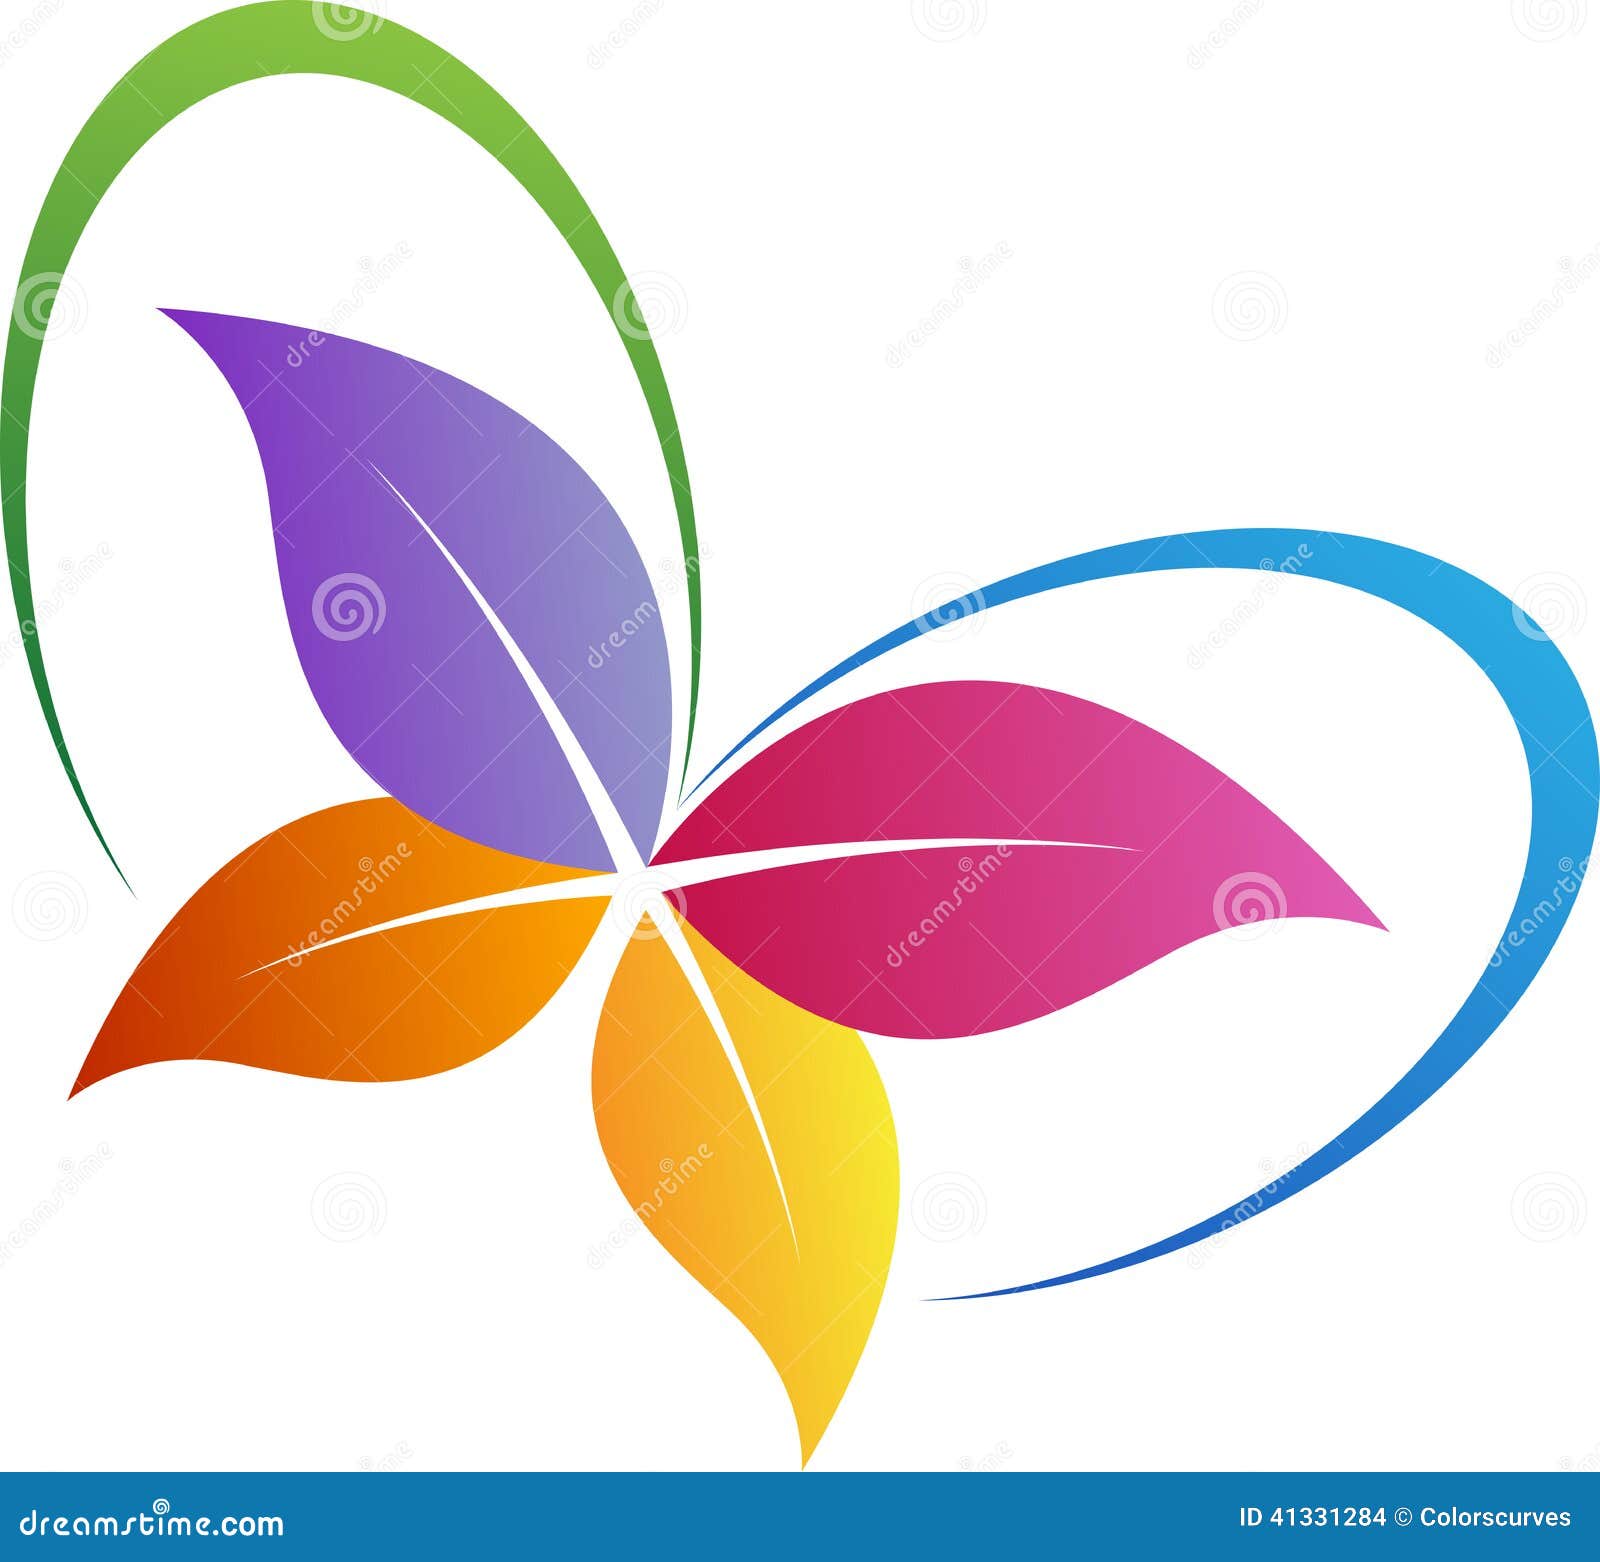 leaf butterfly logo